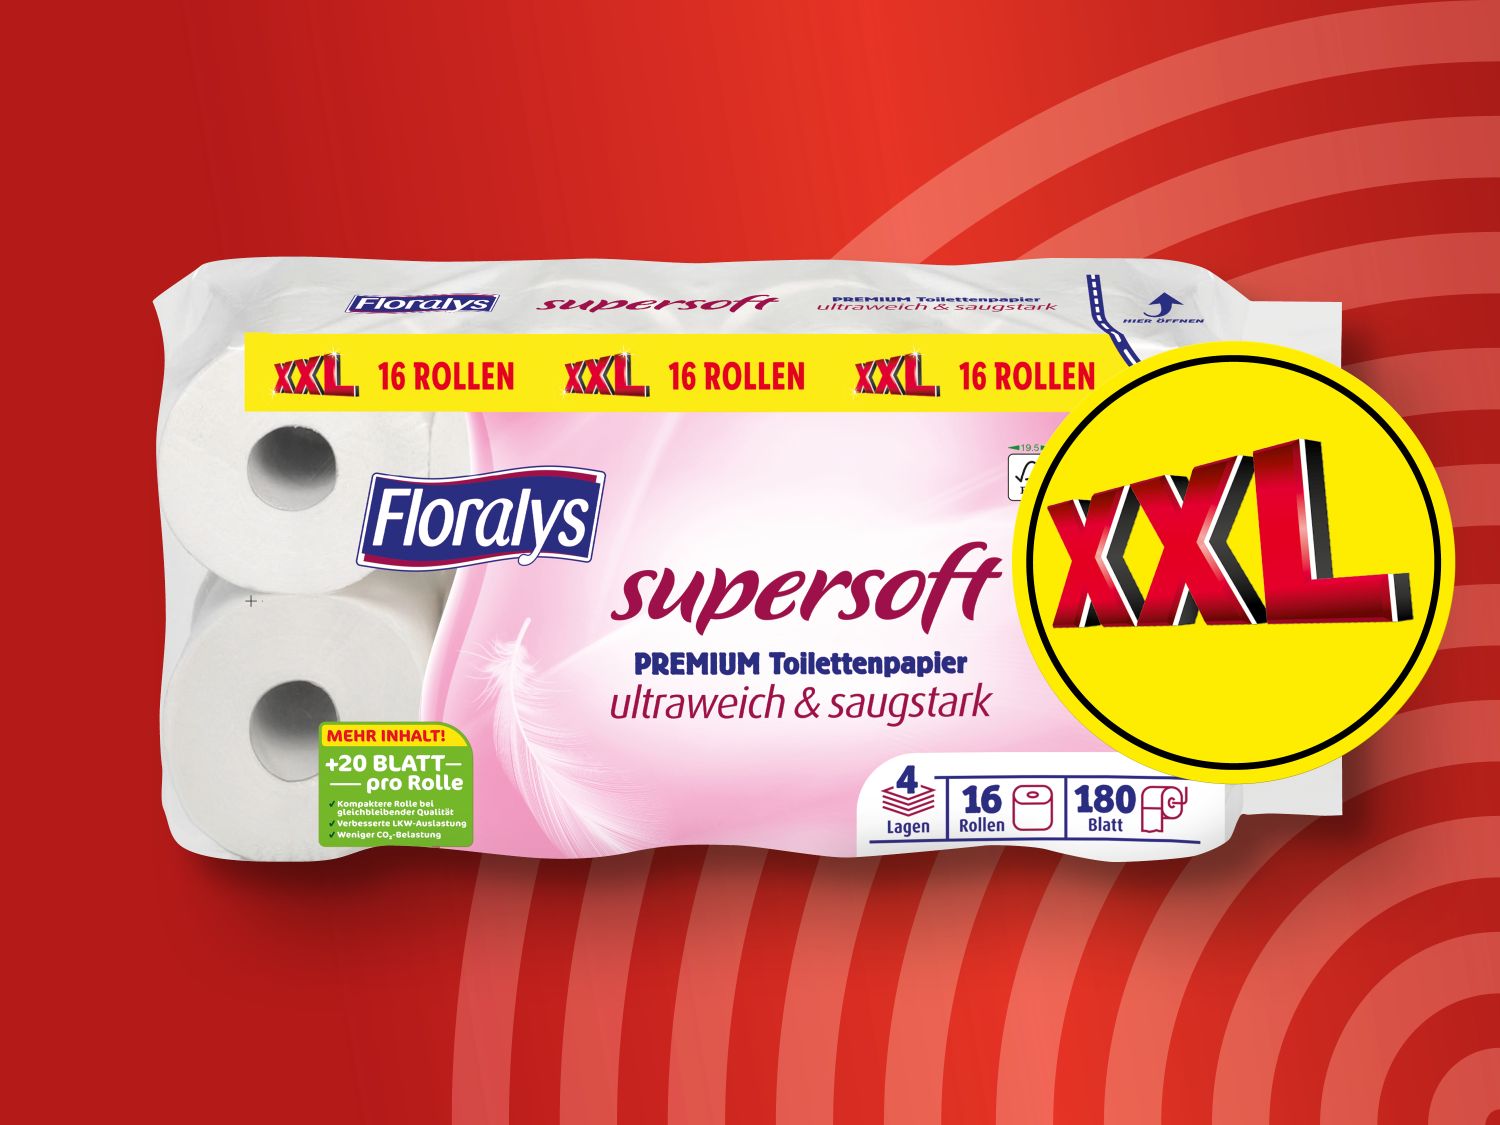 Floralys Supersoft Premium Toilettenpapier Lidl - XXL